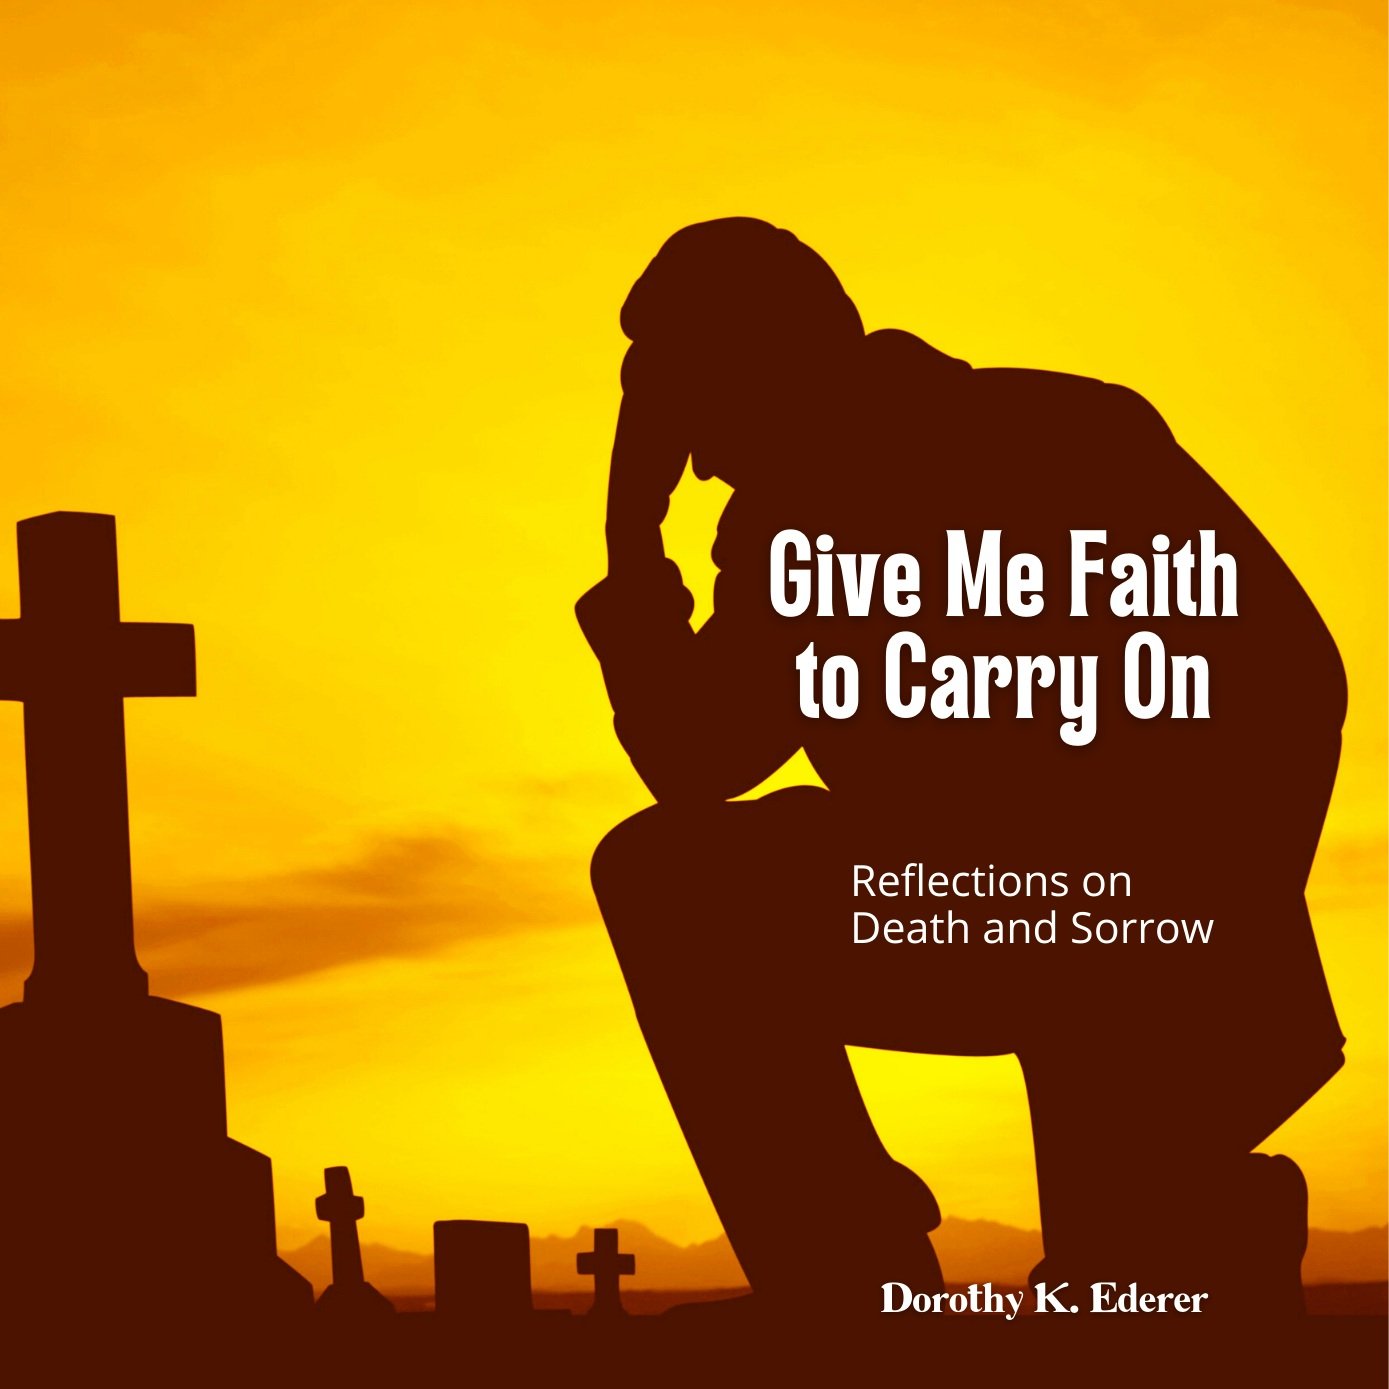 Give+Me+Faith+to+Carry+On+%2830%29.jpg